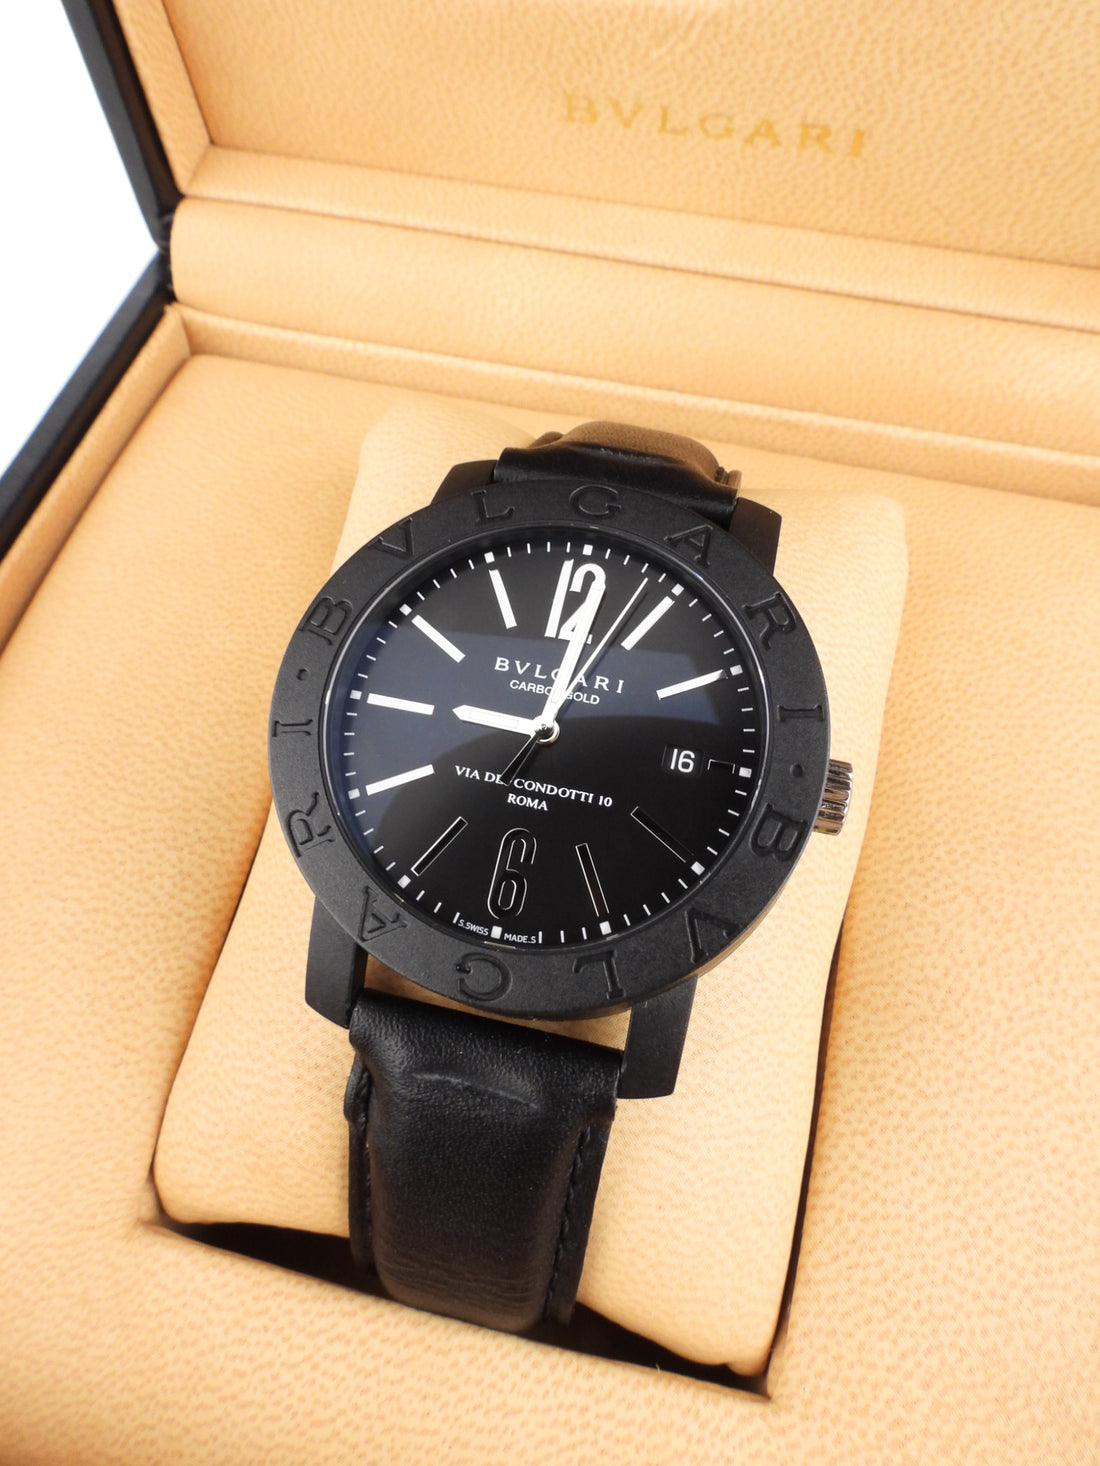 Bvlgari Black Carbongold Via dei Condotti Automatic 40mm Leather Strap Watch